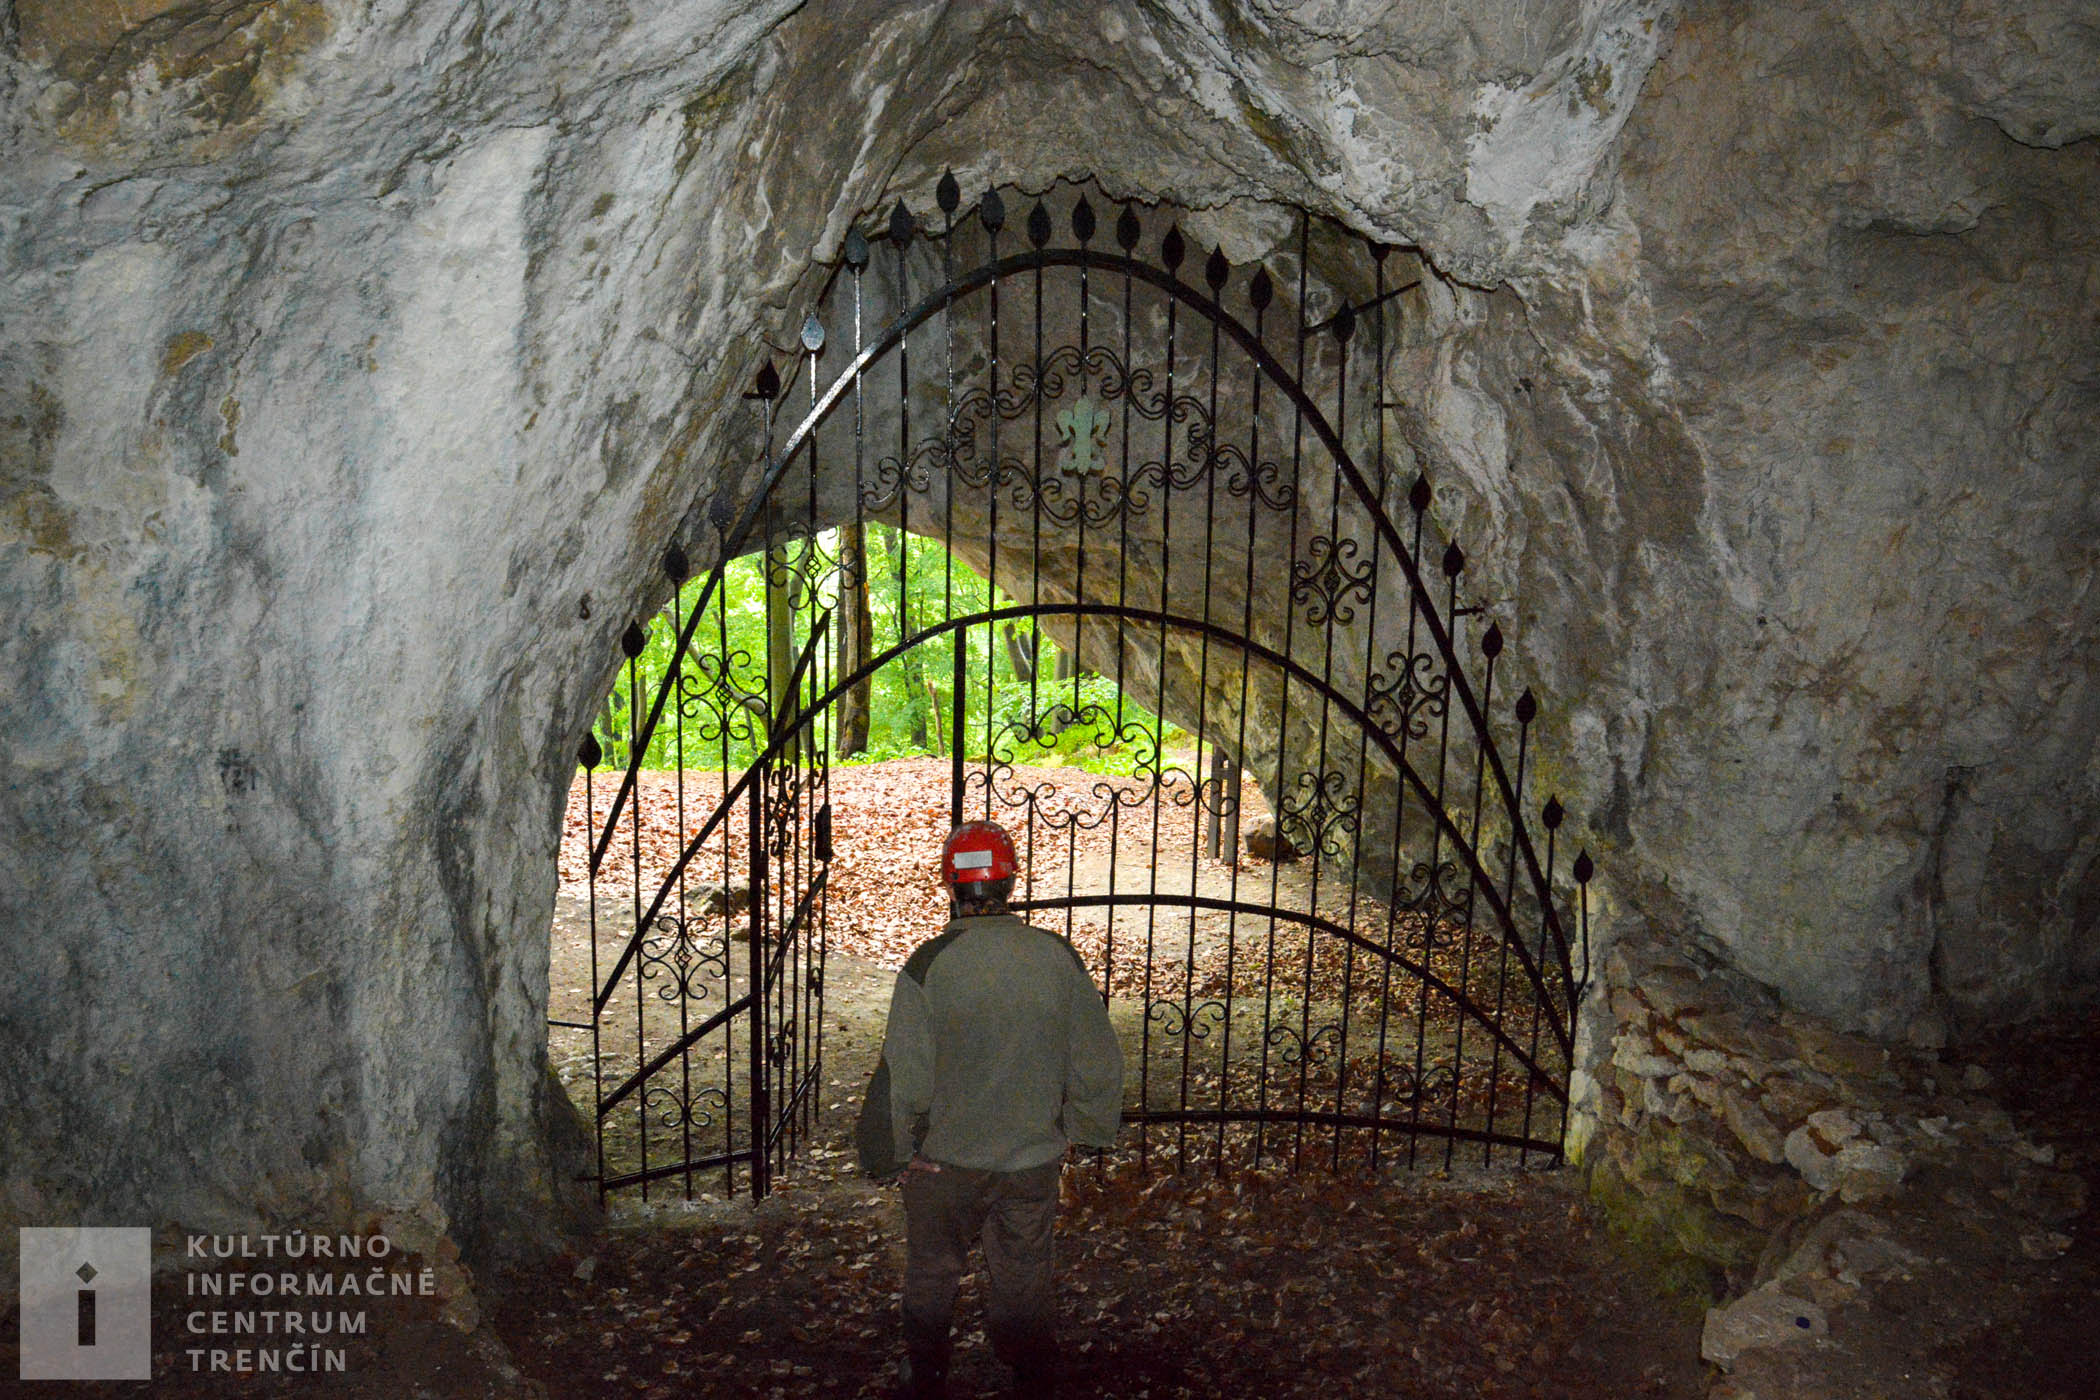 Vchod do jaskyne sa nachádza vo výške 590 metrov nad morom.